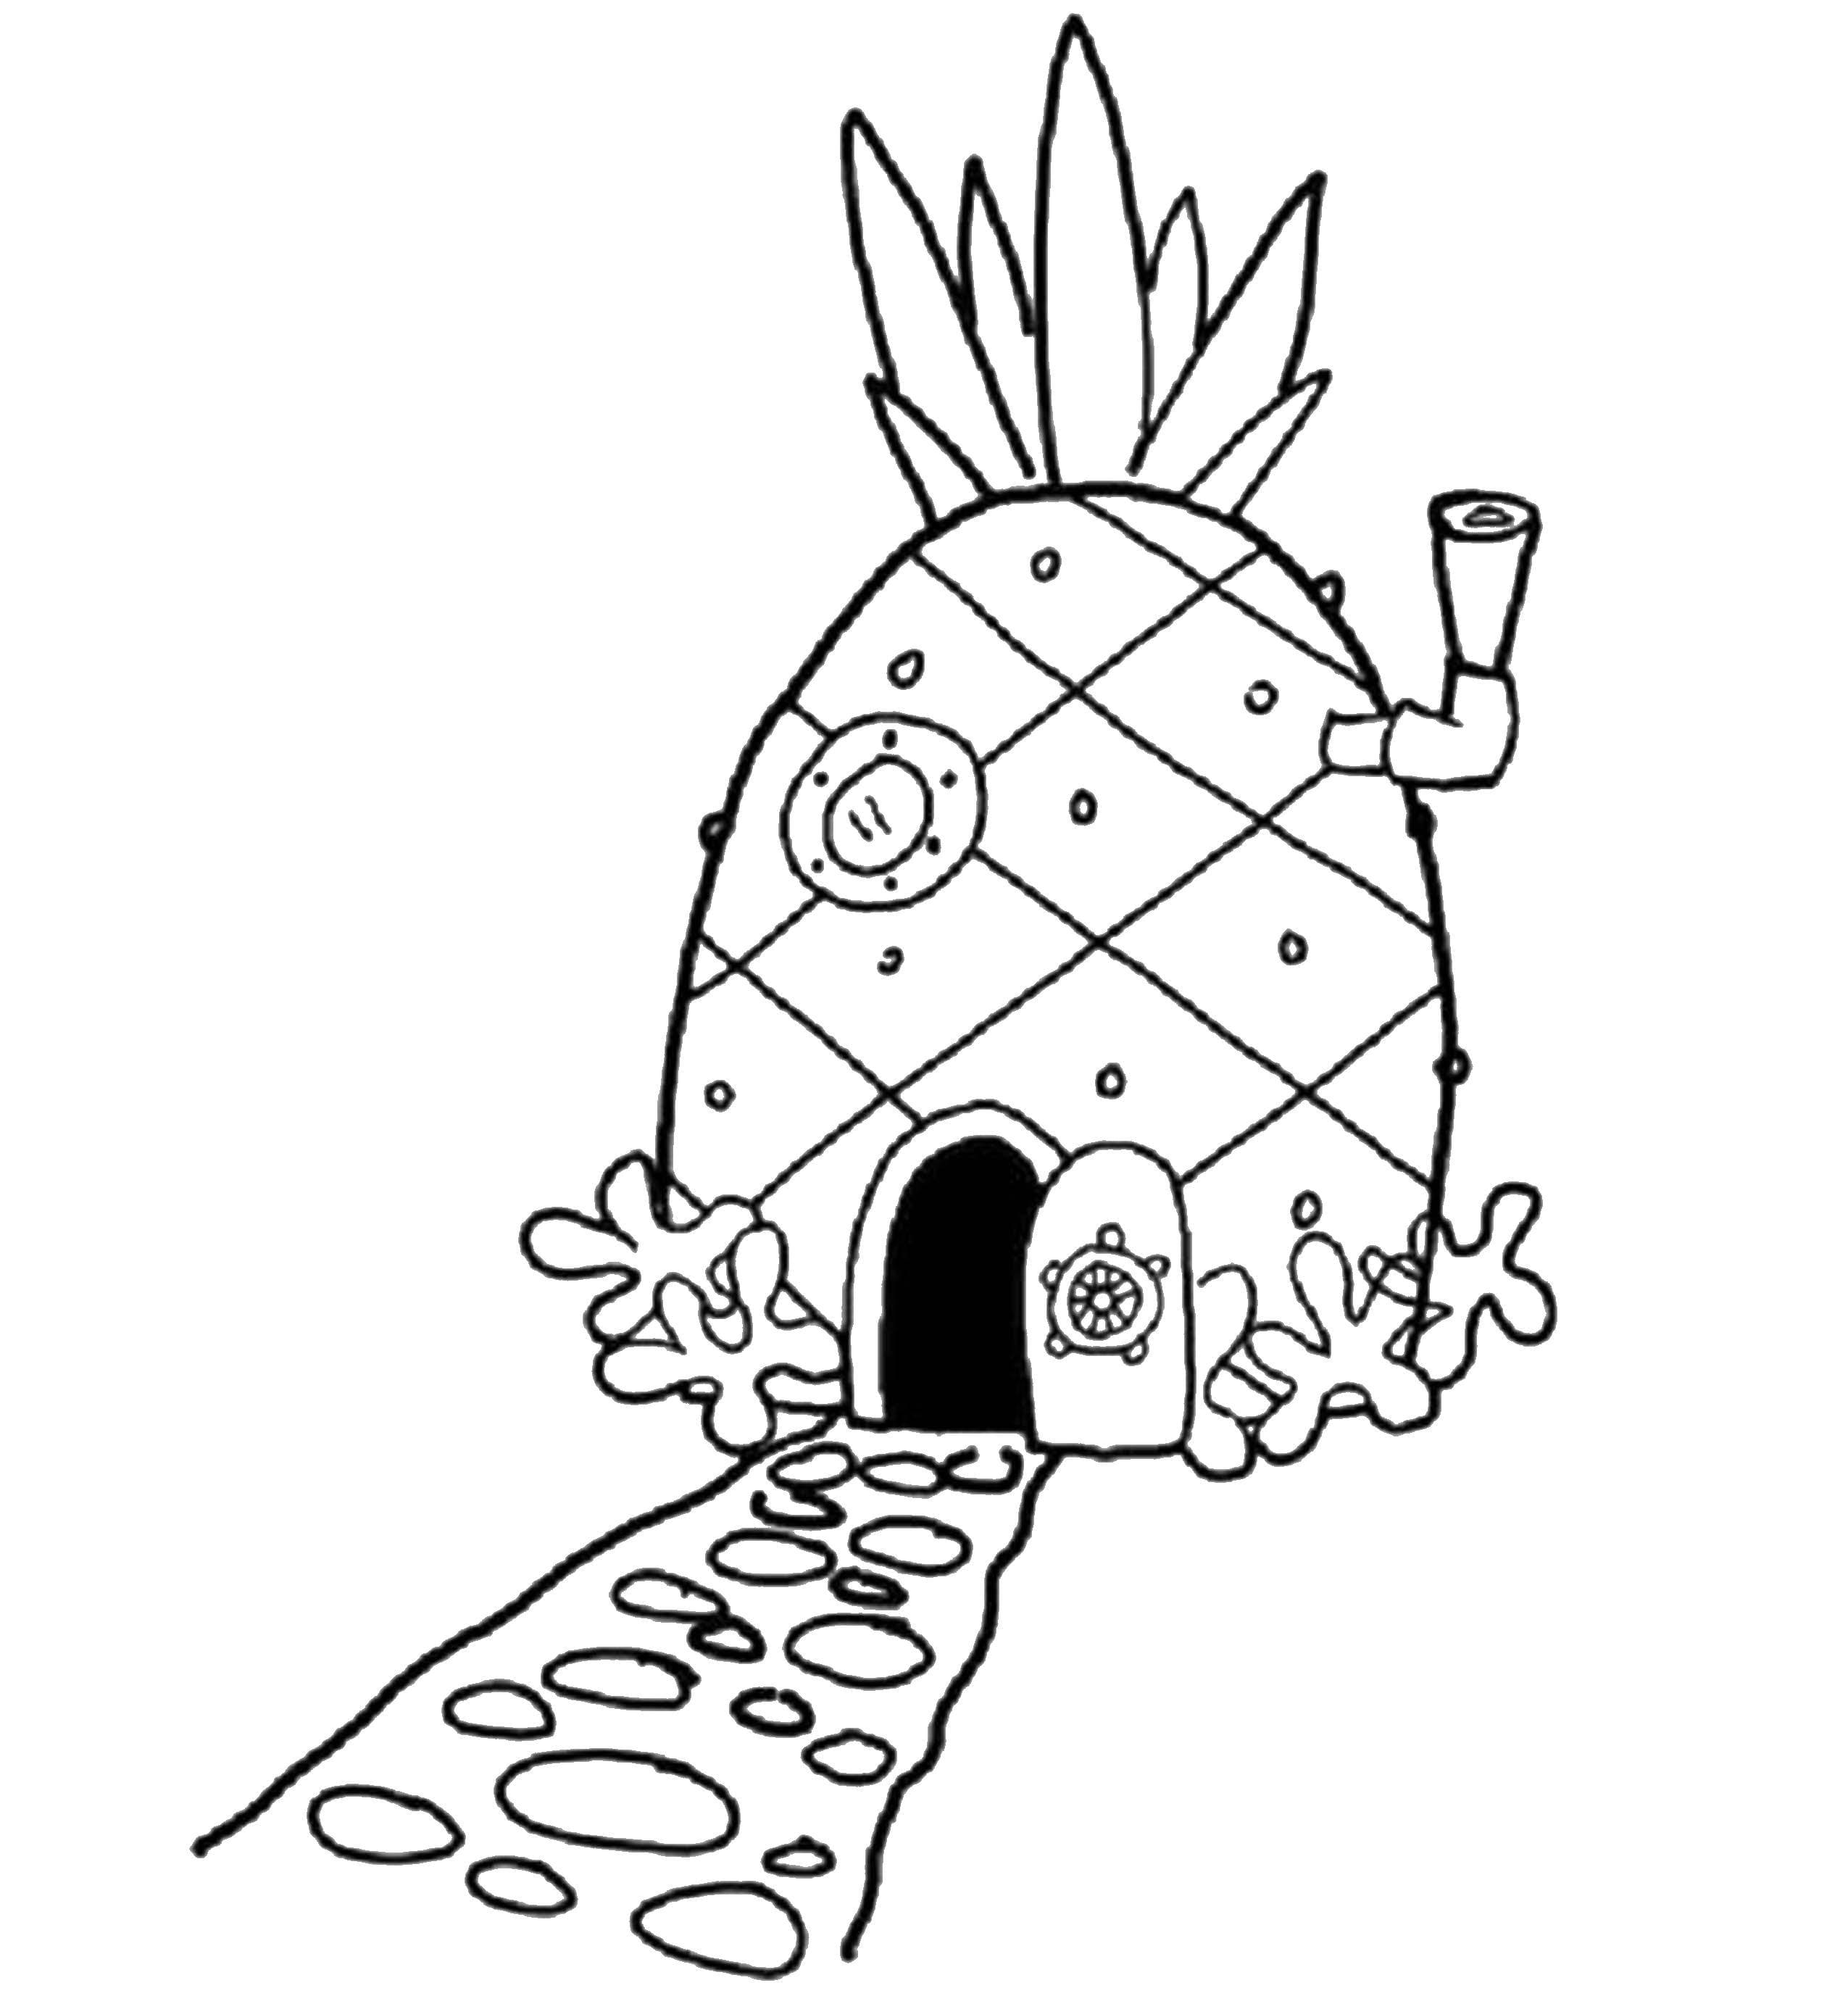 Disegni di Spongebob da colorare - Stampa gratis - le migliori immagini